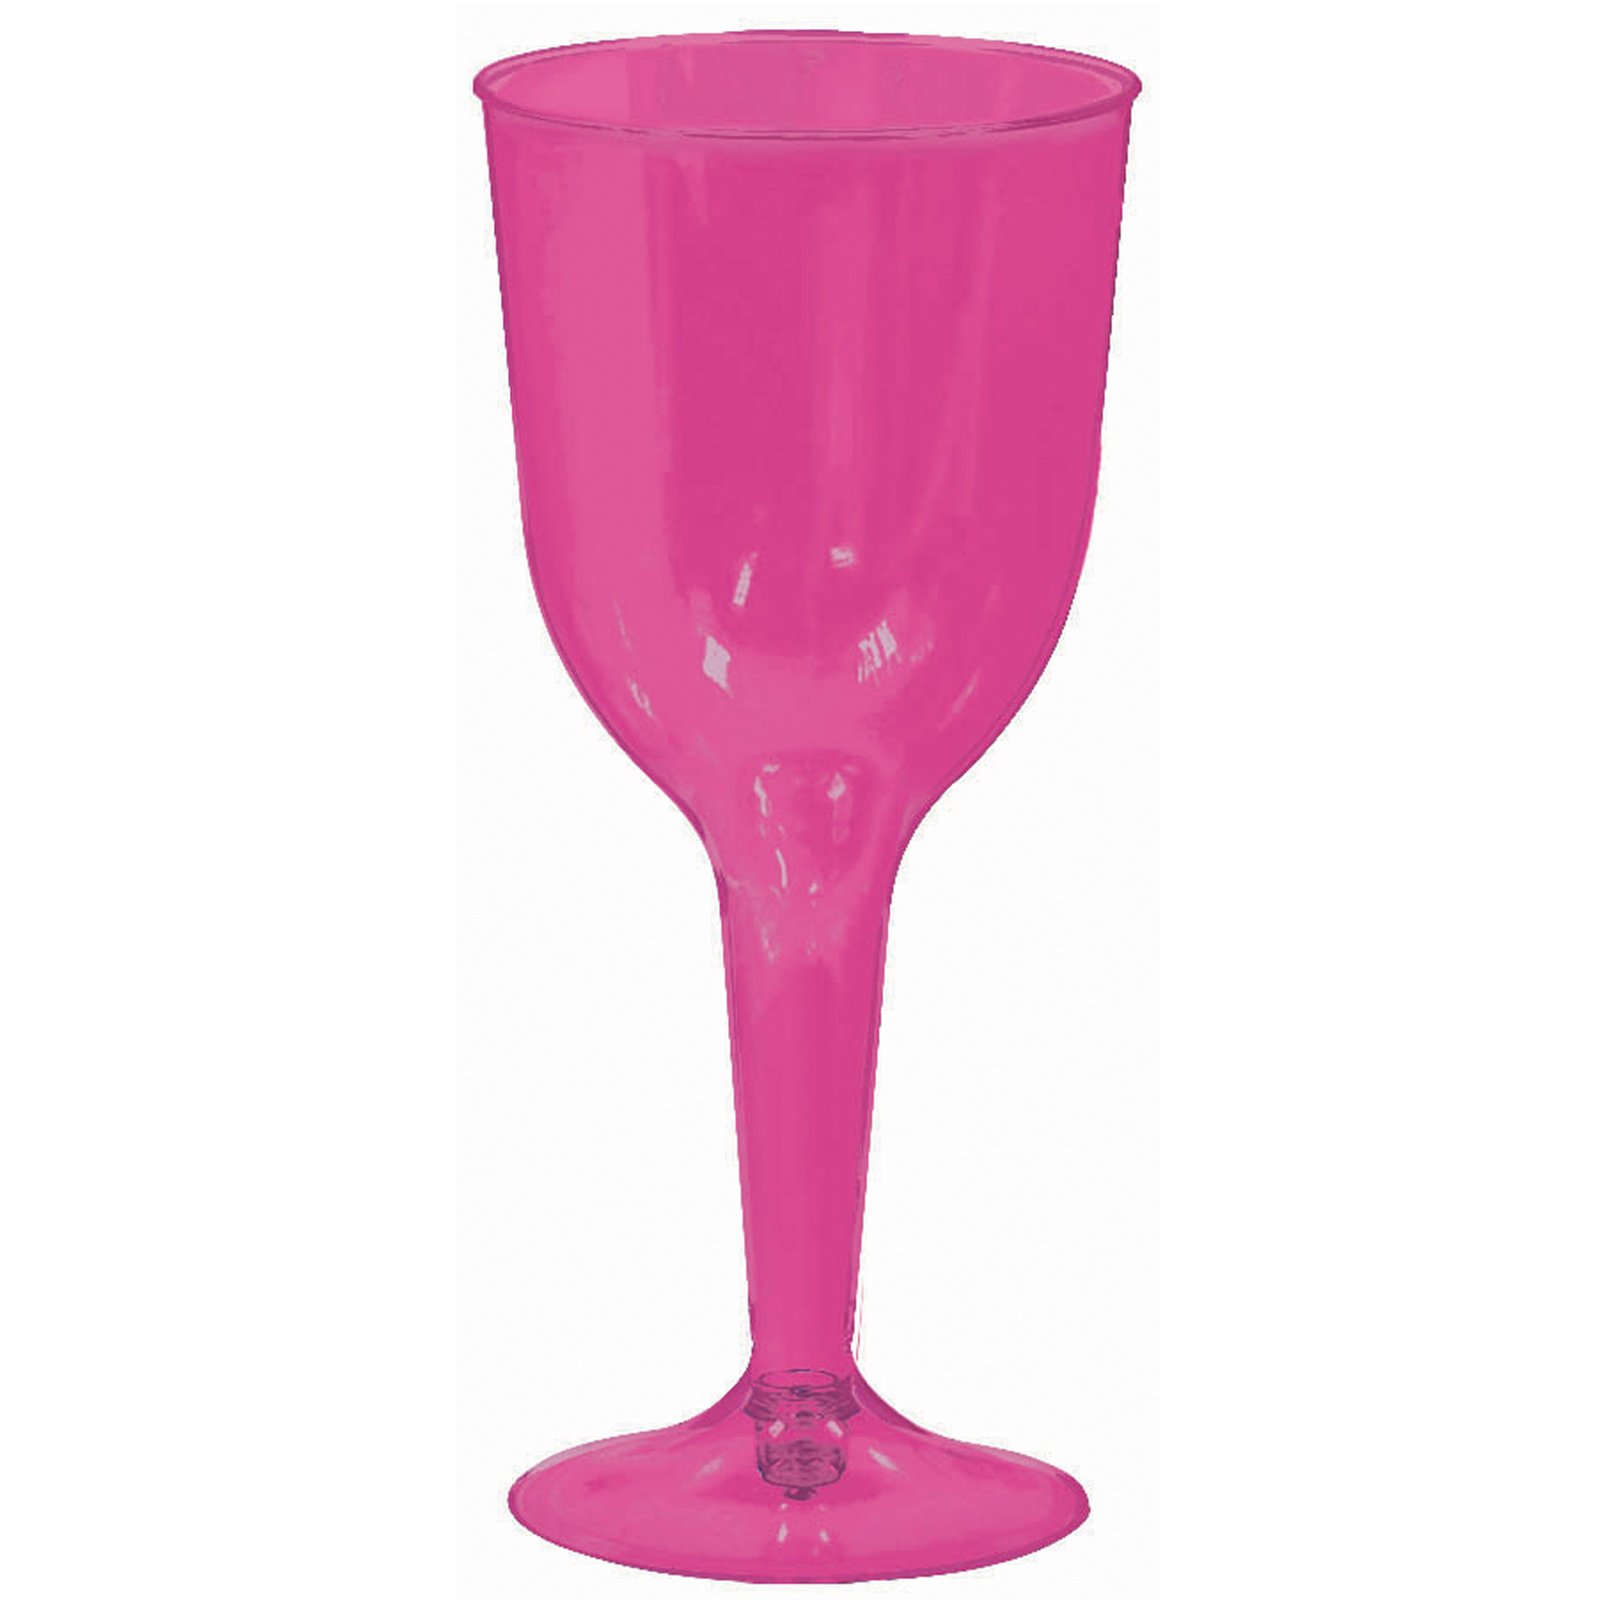 Bright Pink 10 oz. Premium Plastic Wine Glasses (18 count)